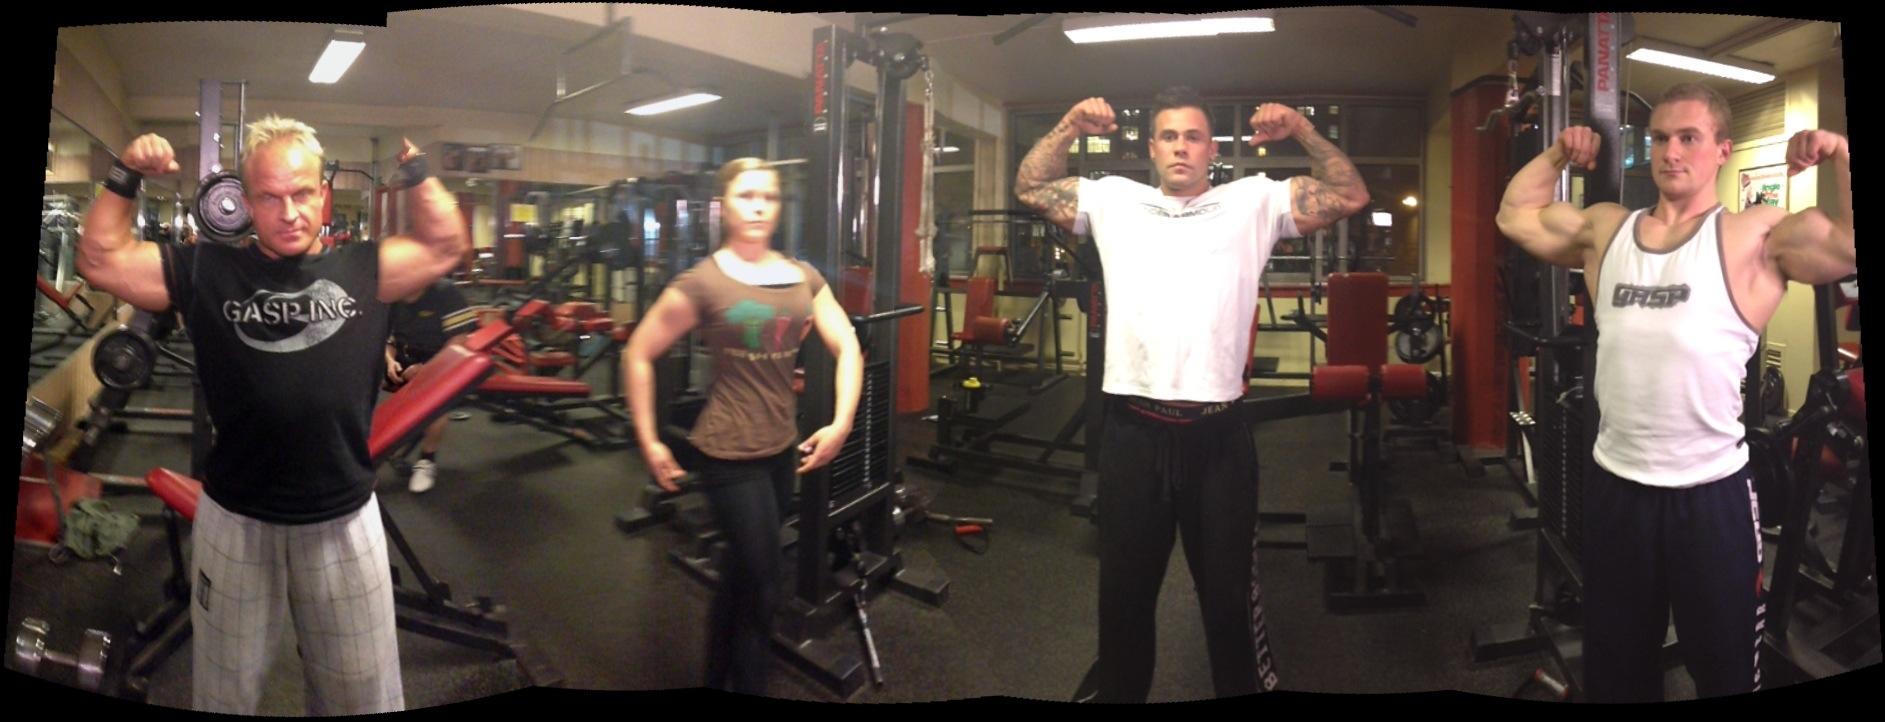 Kroppsbyggerne fra Haralds Gym viste muskler da Mobilen.no og TV 2 Hjelper deg testet foto-apper.